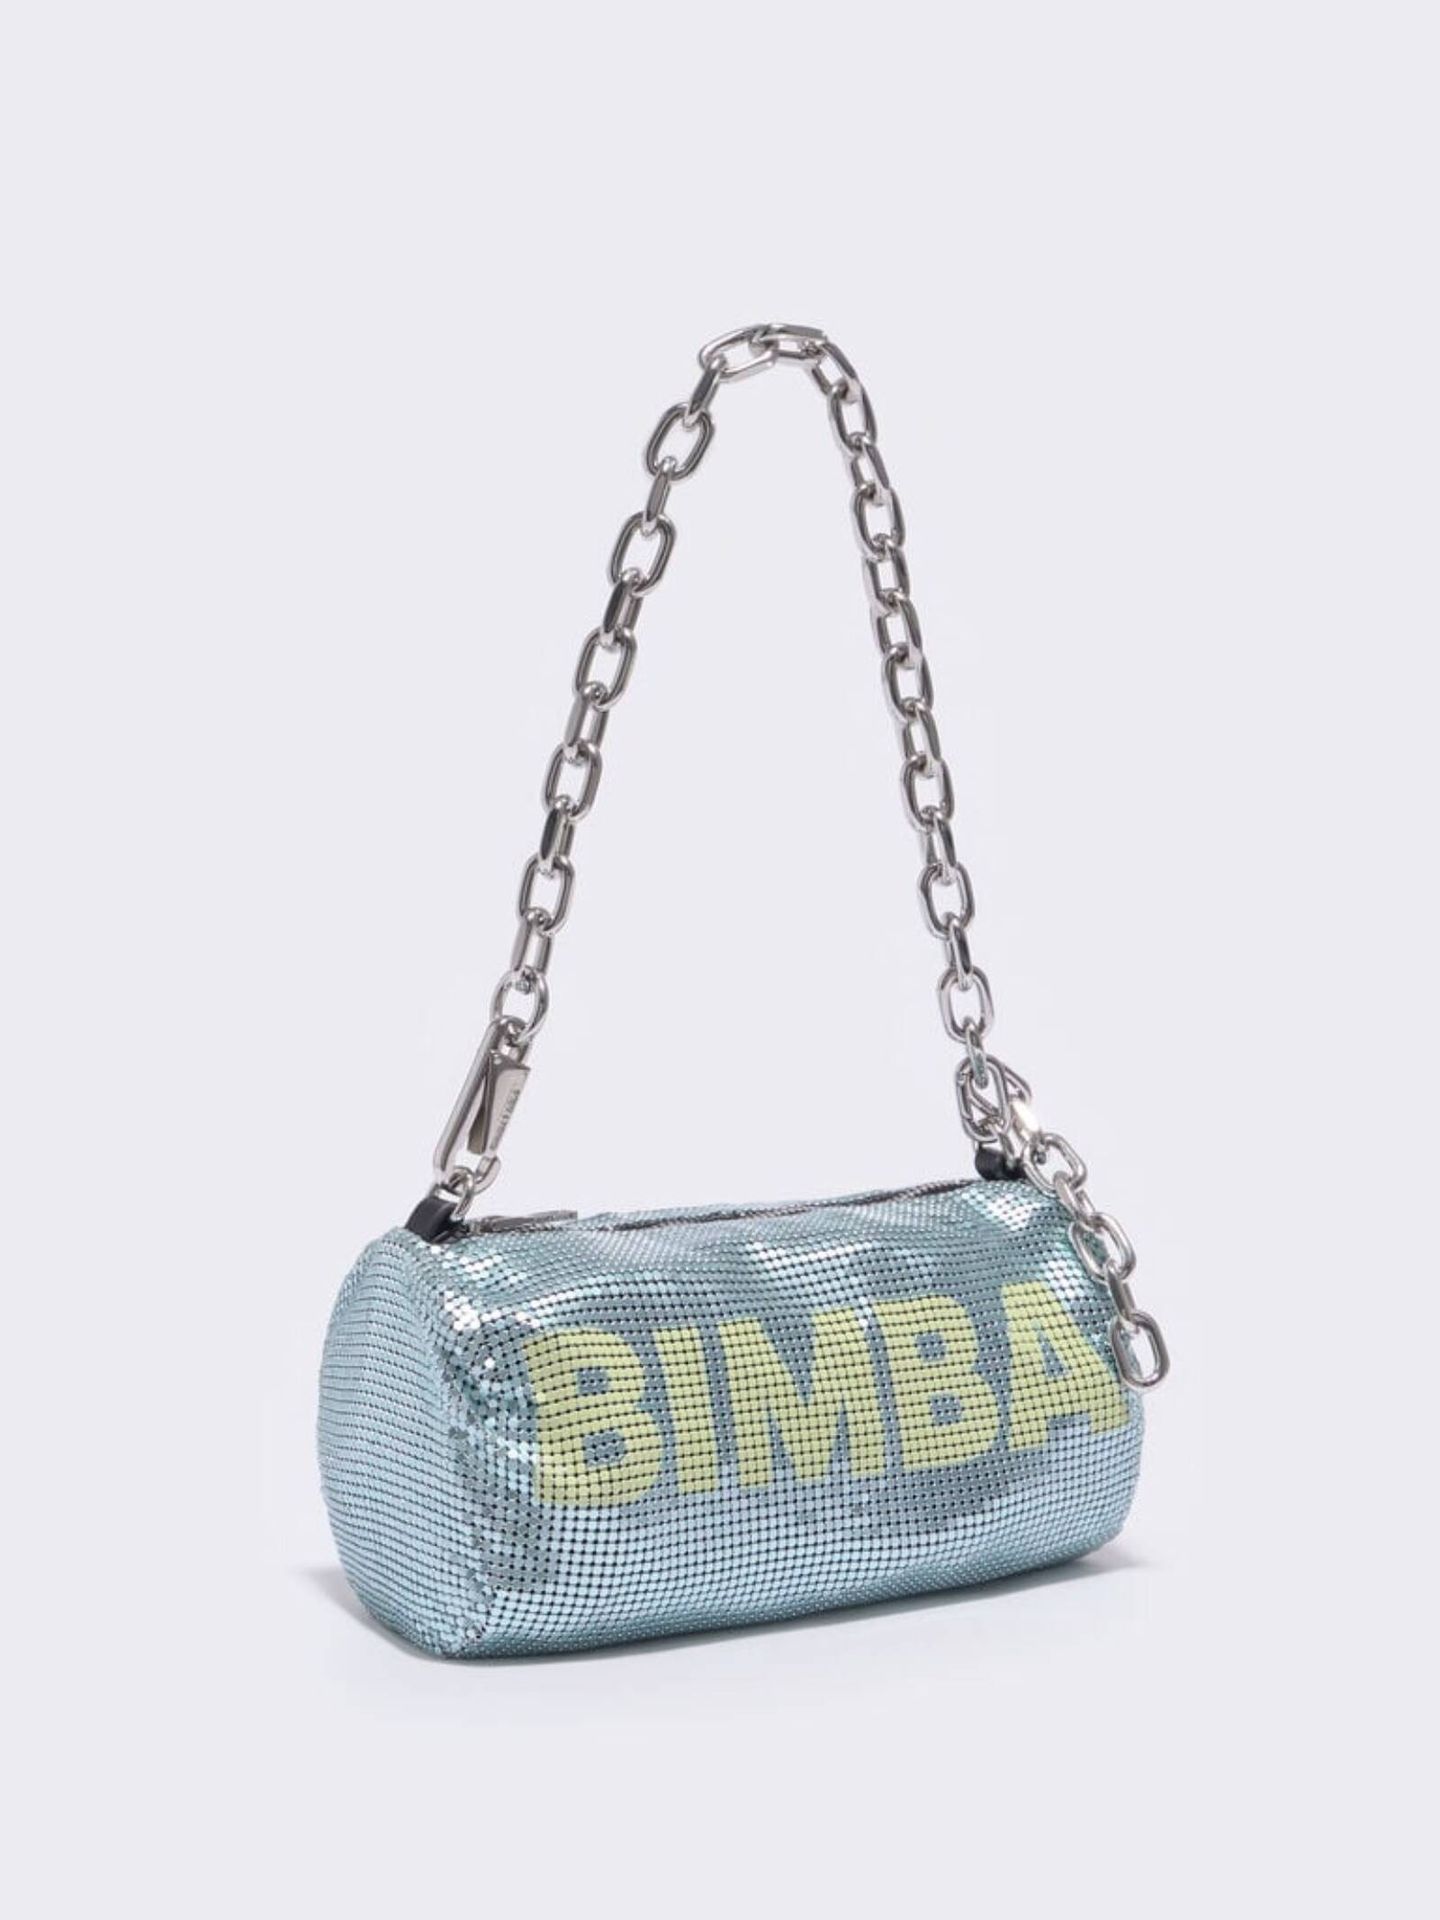 Bimba y Lola se inspira en Balenciaga e Ikea para lanzar este nuevo maxi  bolso